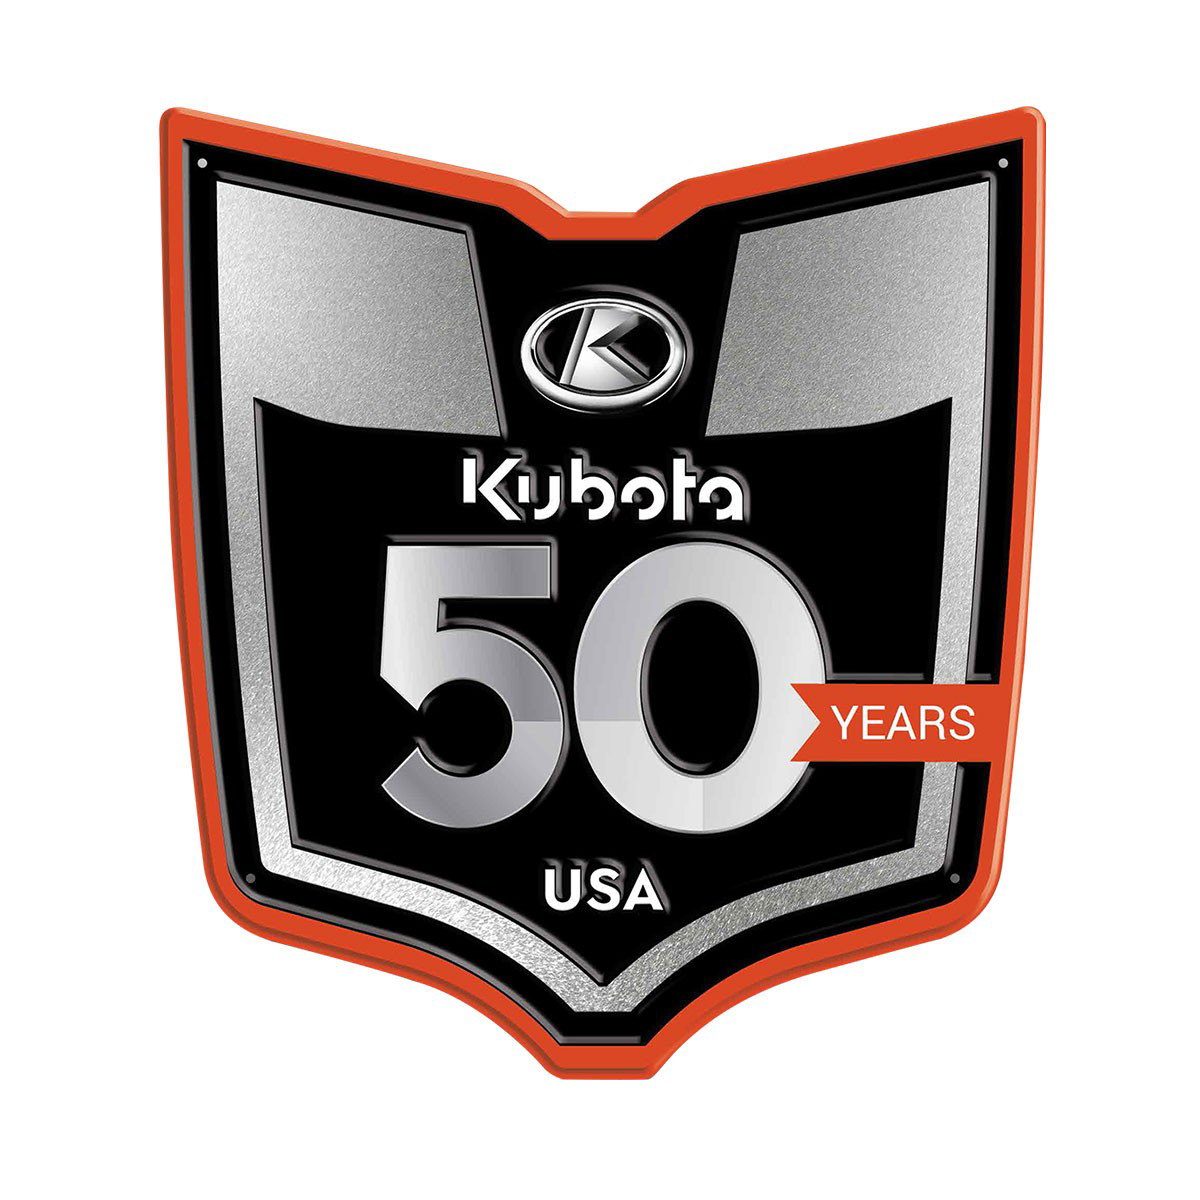 Kubota #KBTF008 Kubota 50th Anniversary Aluminum Sign